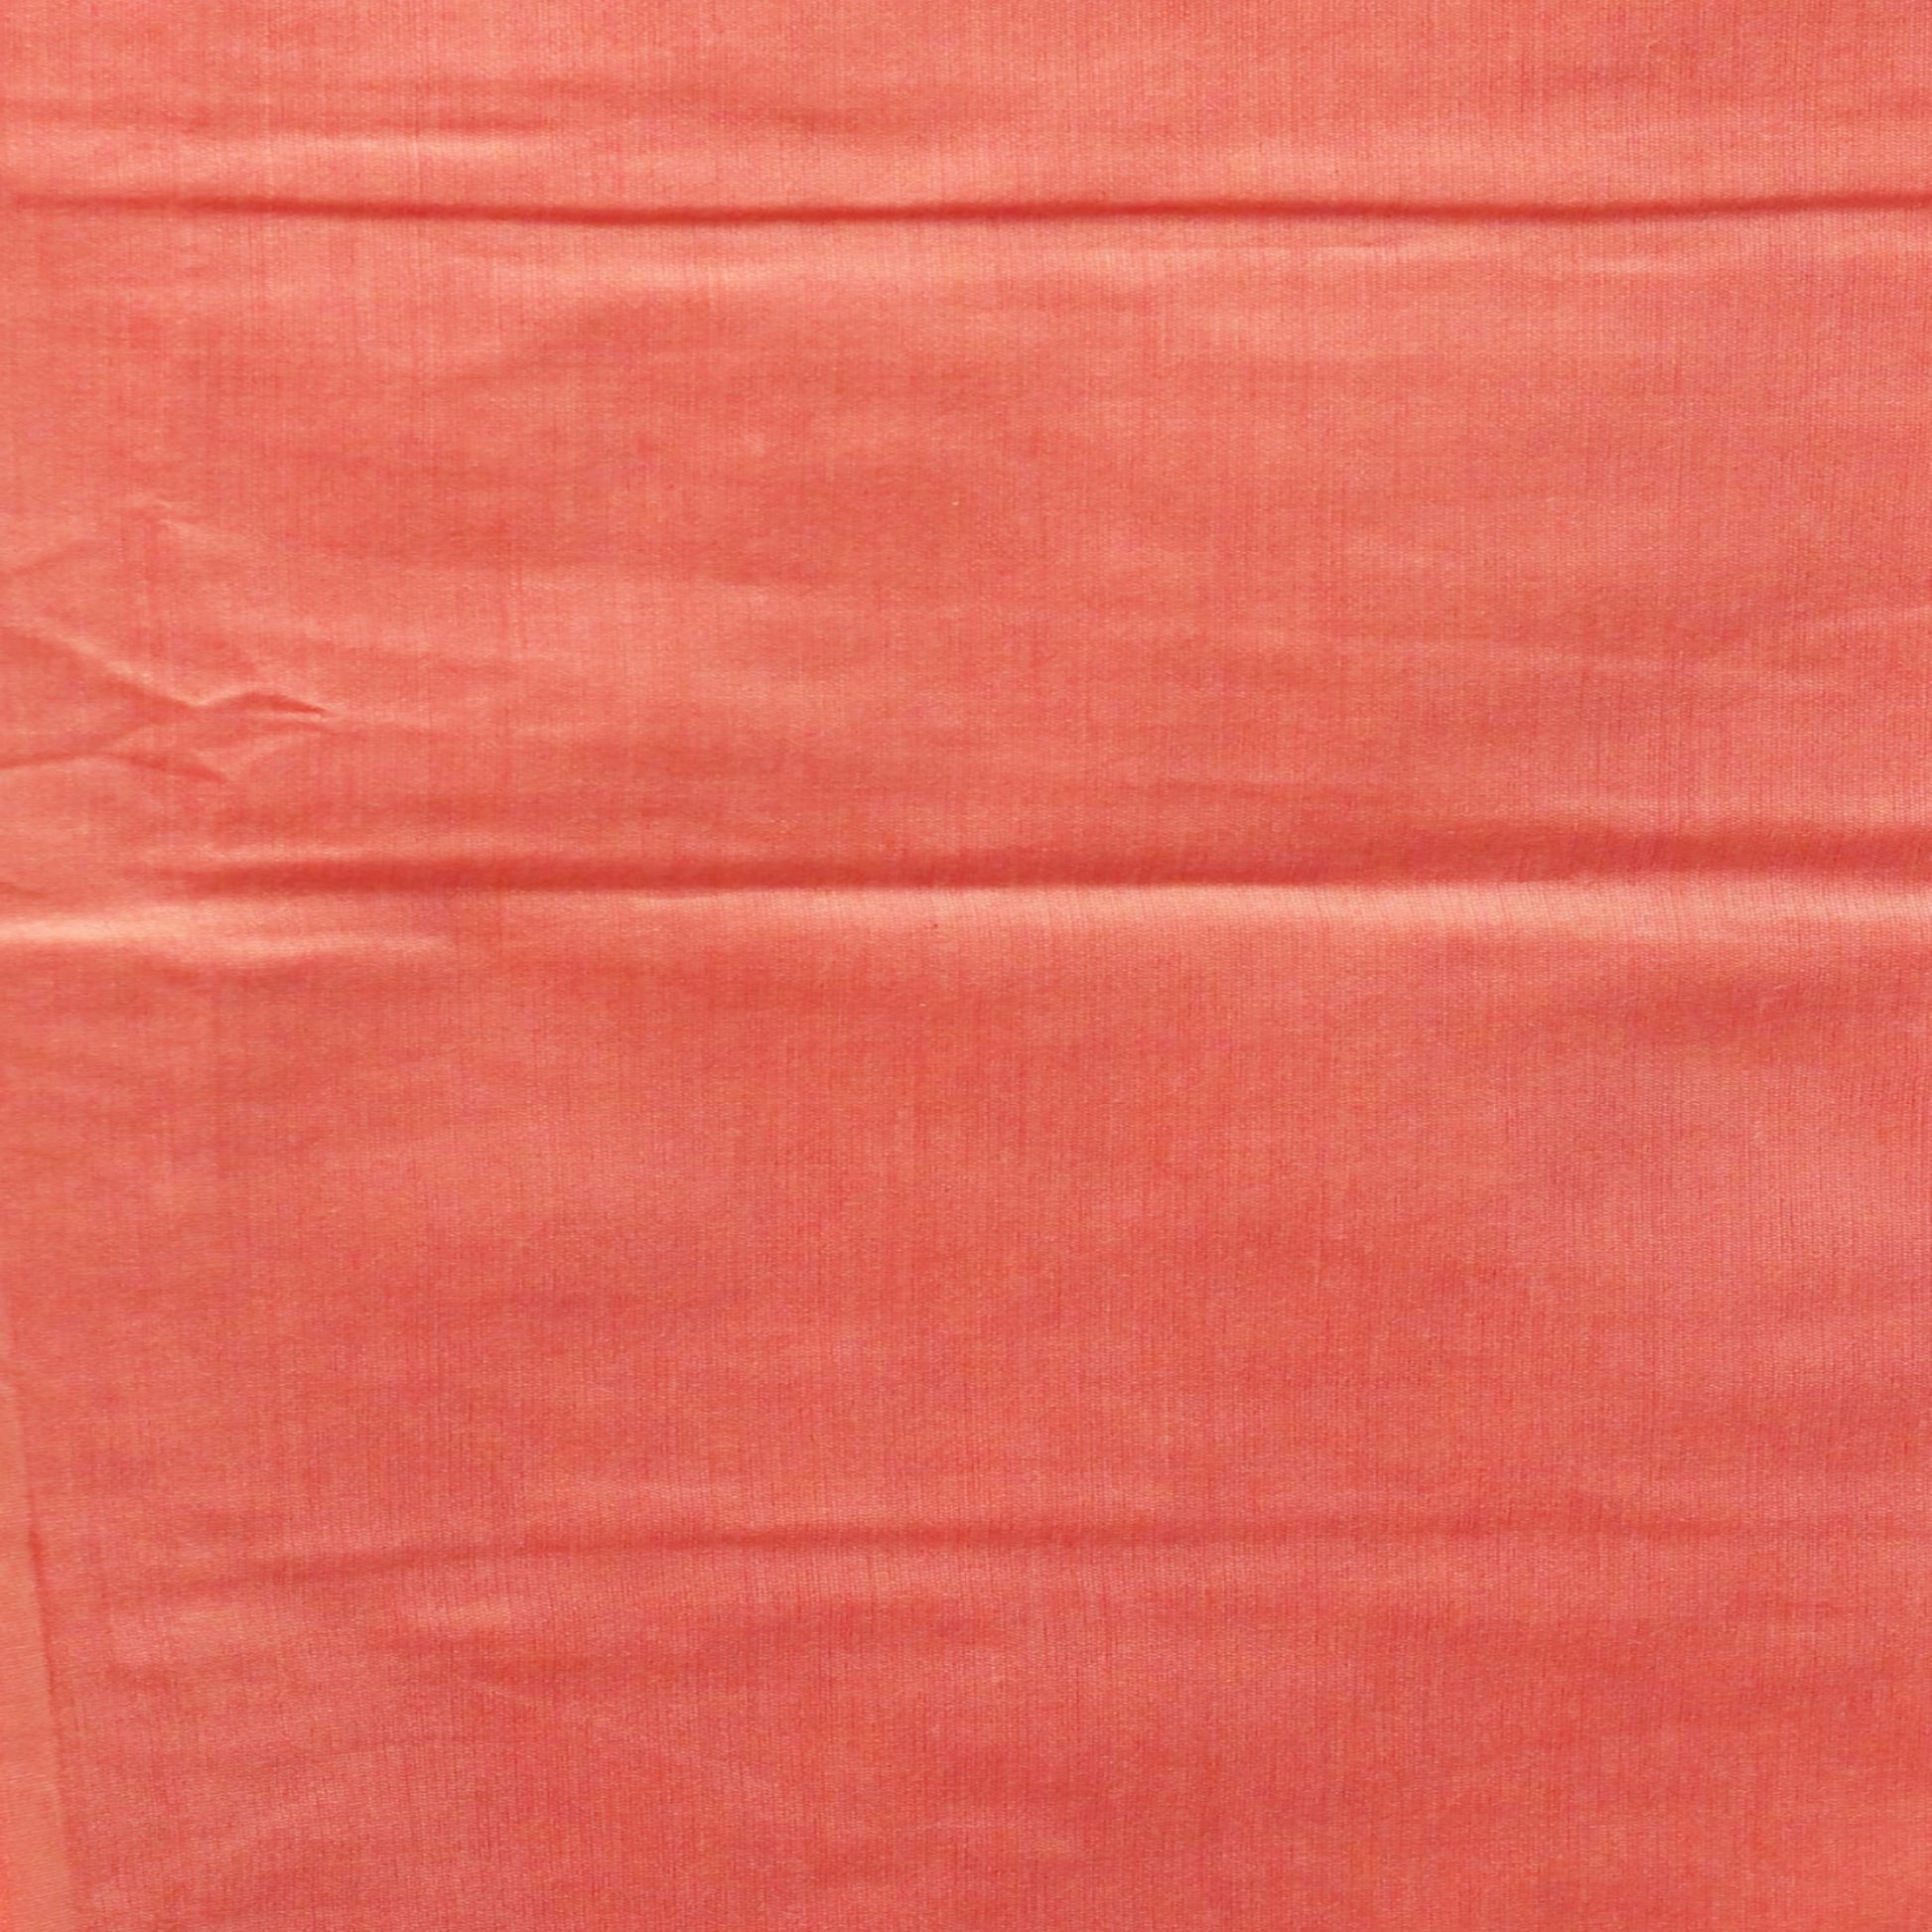 cotton silk bottom in peach color 